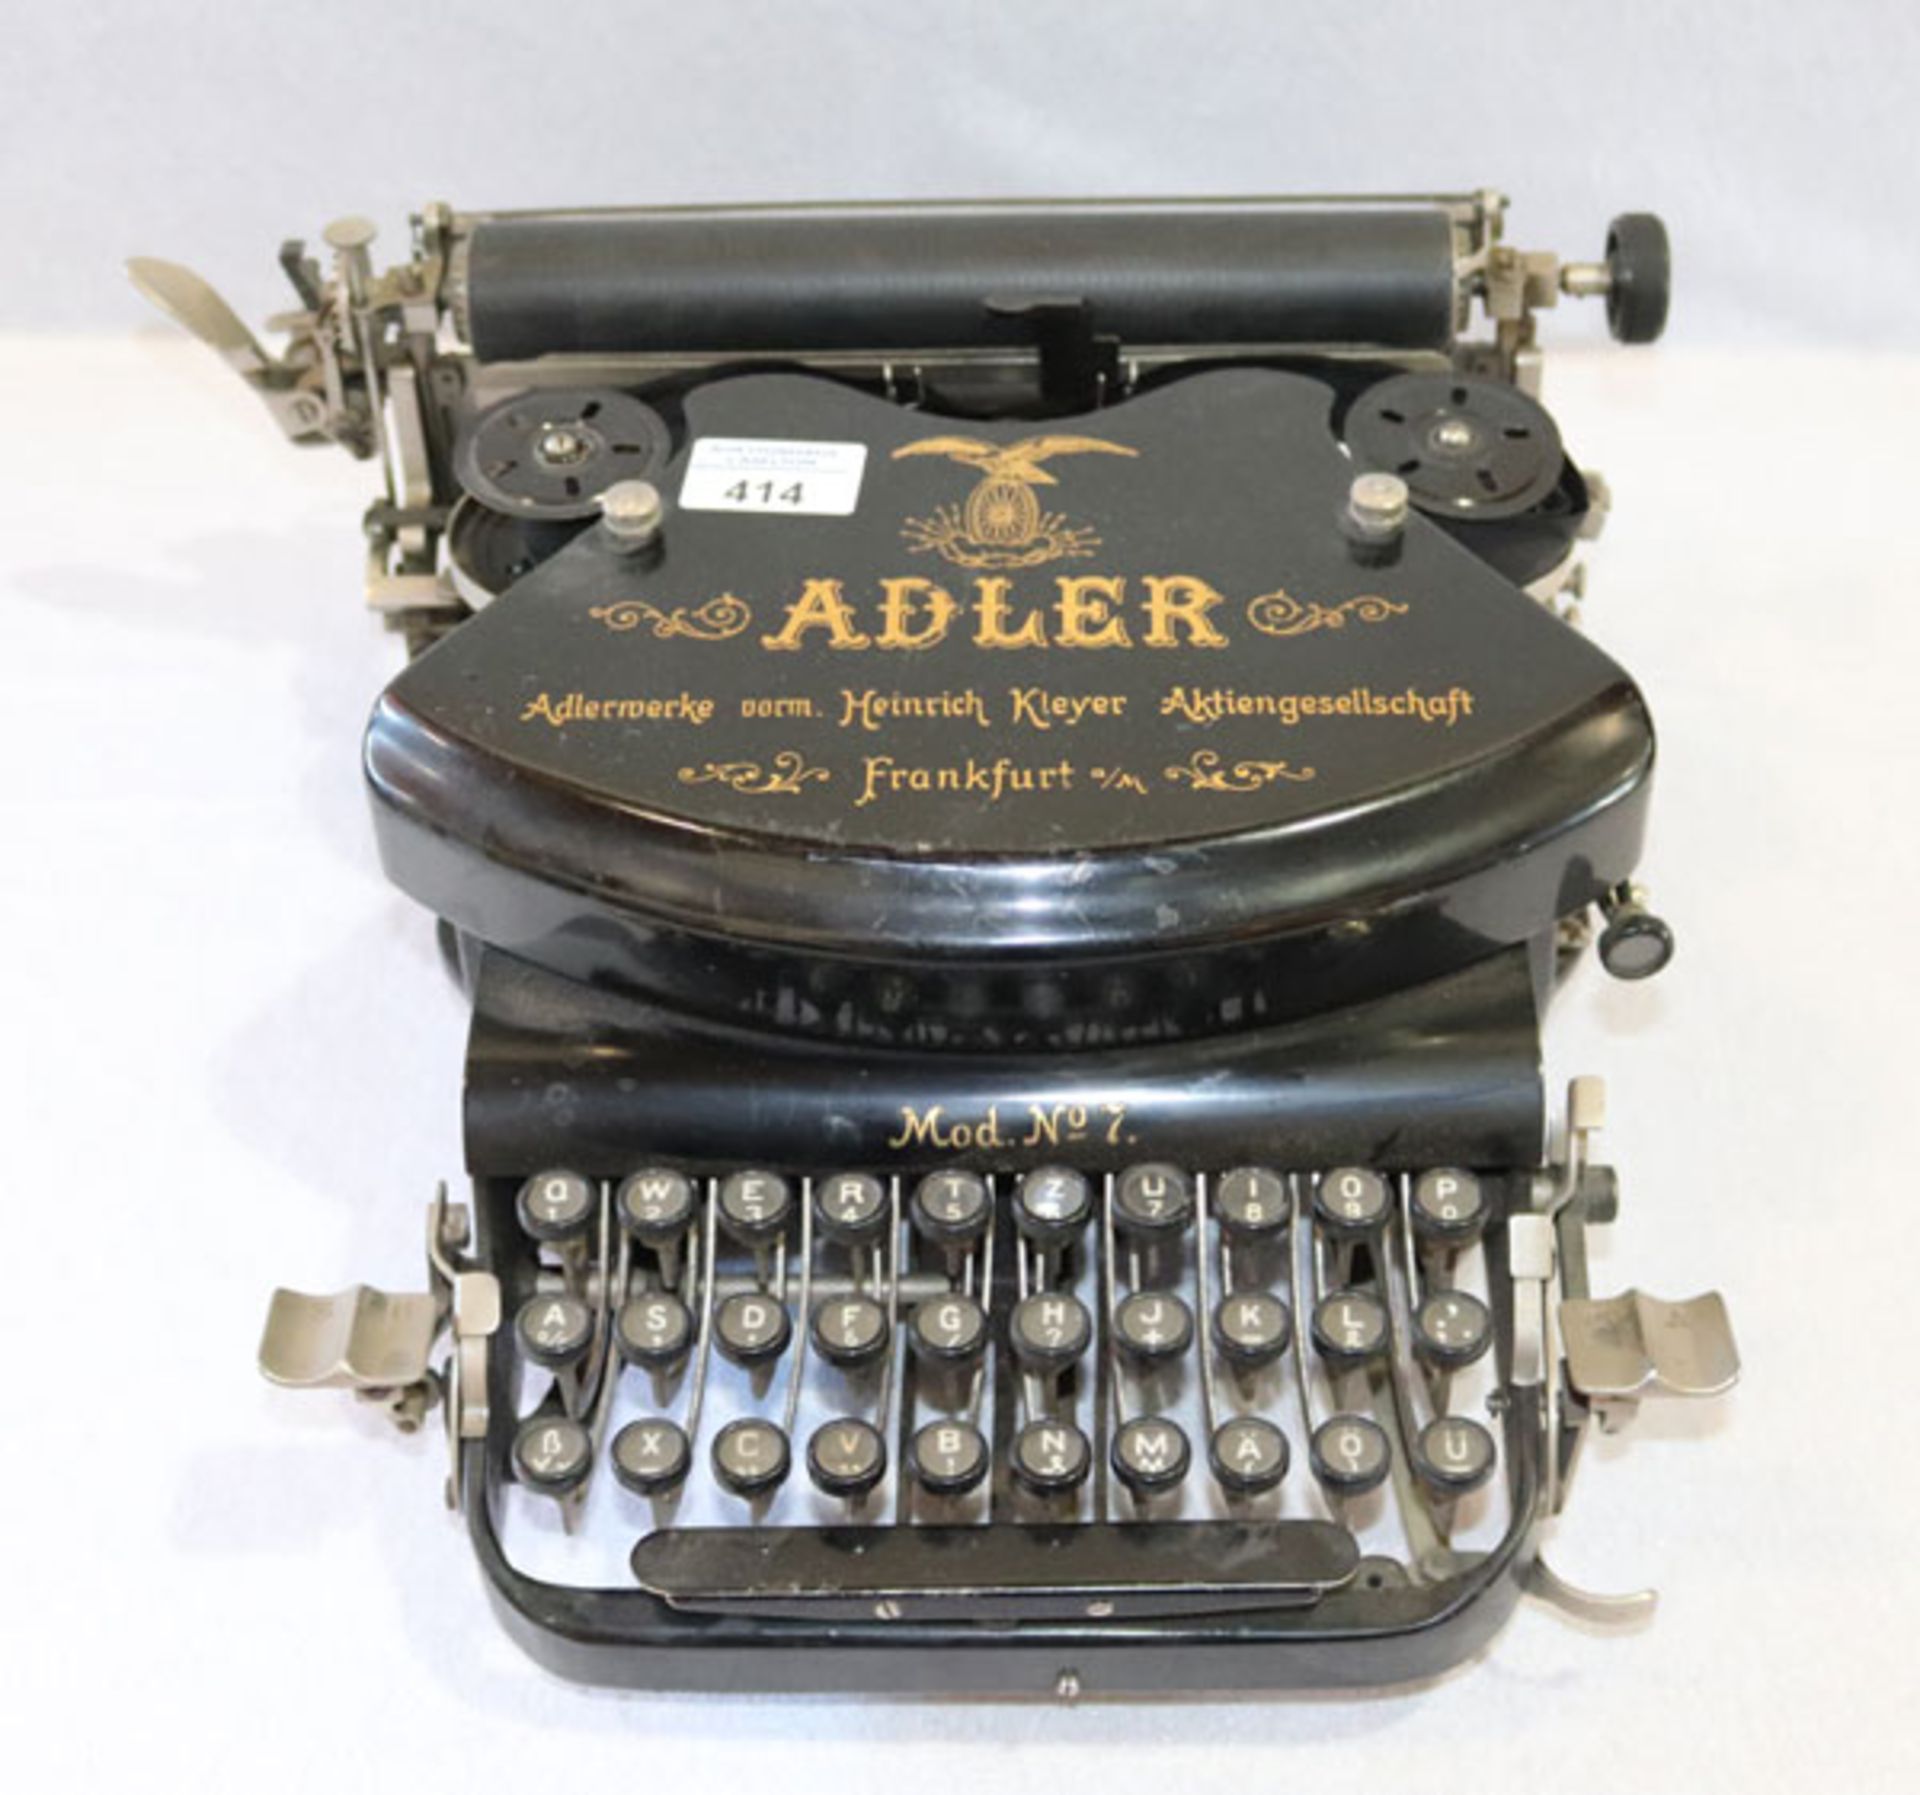 Adler Schreibmaschine, Mod. Nr. 7, Heinrich Kleyer Aktiengesllschaft-Frankfurt/Main, Alters- und